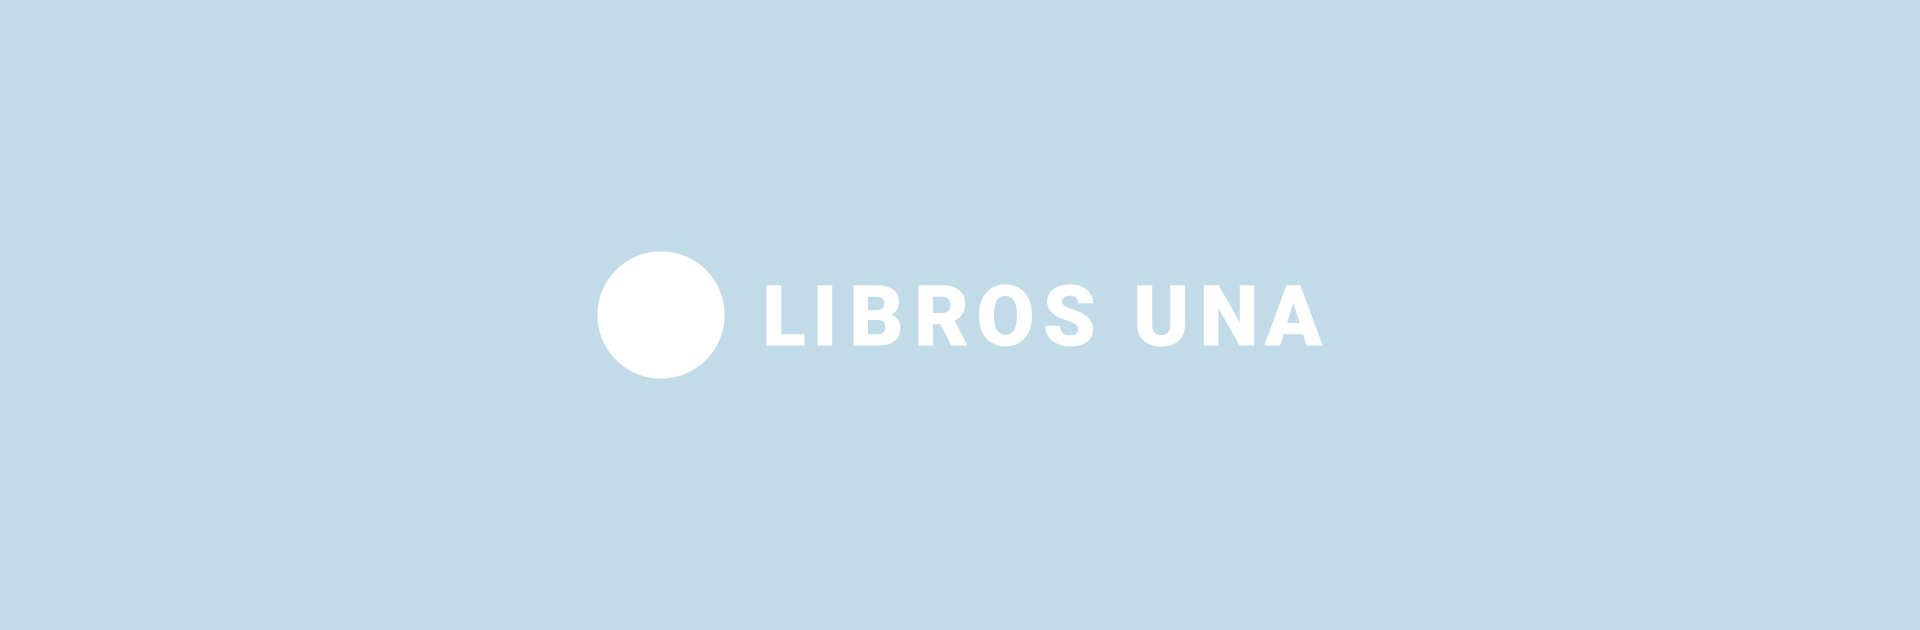 La Universidad Nacional de las Artes presentó su editorial Libros UNA